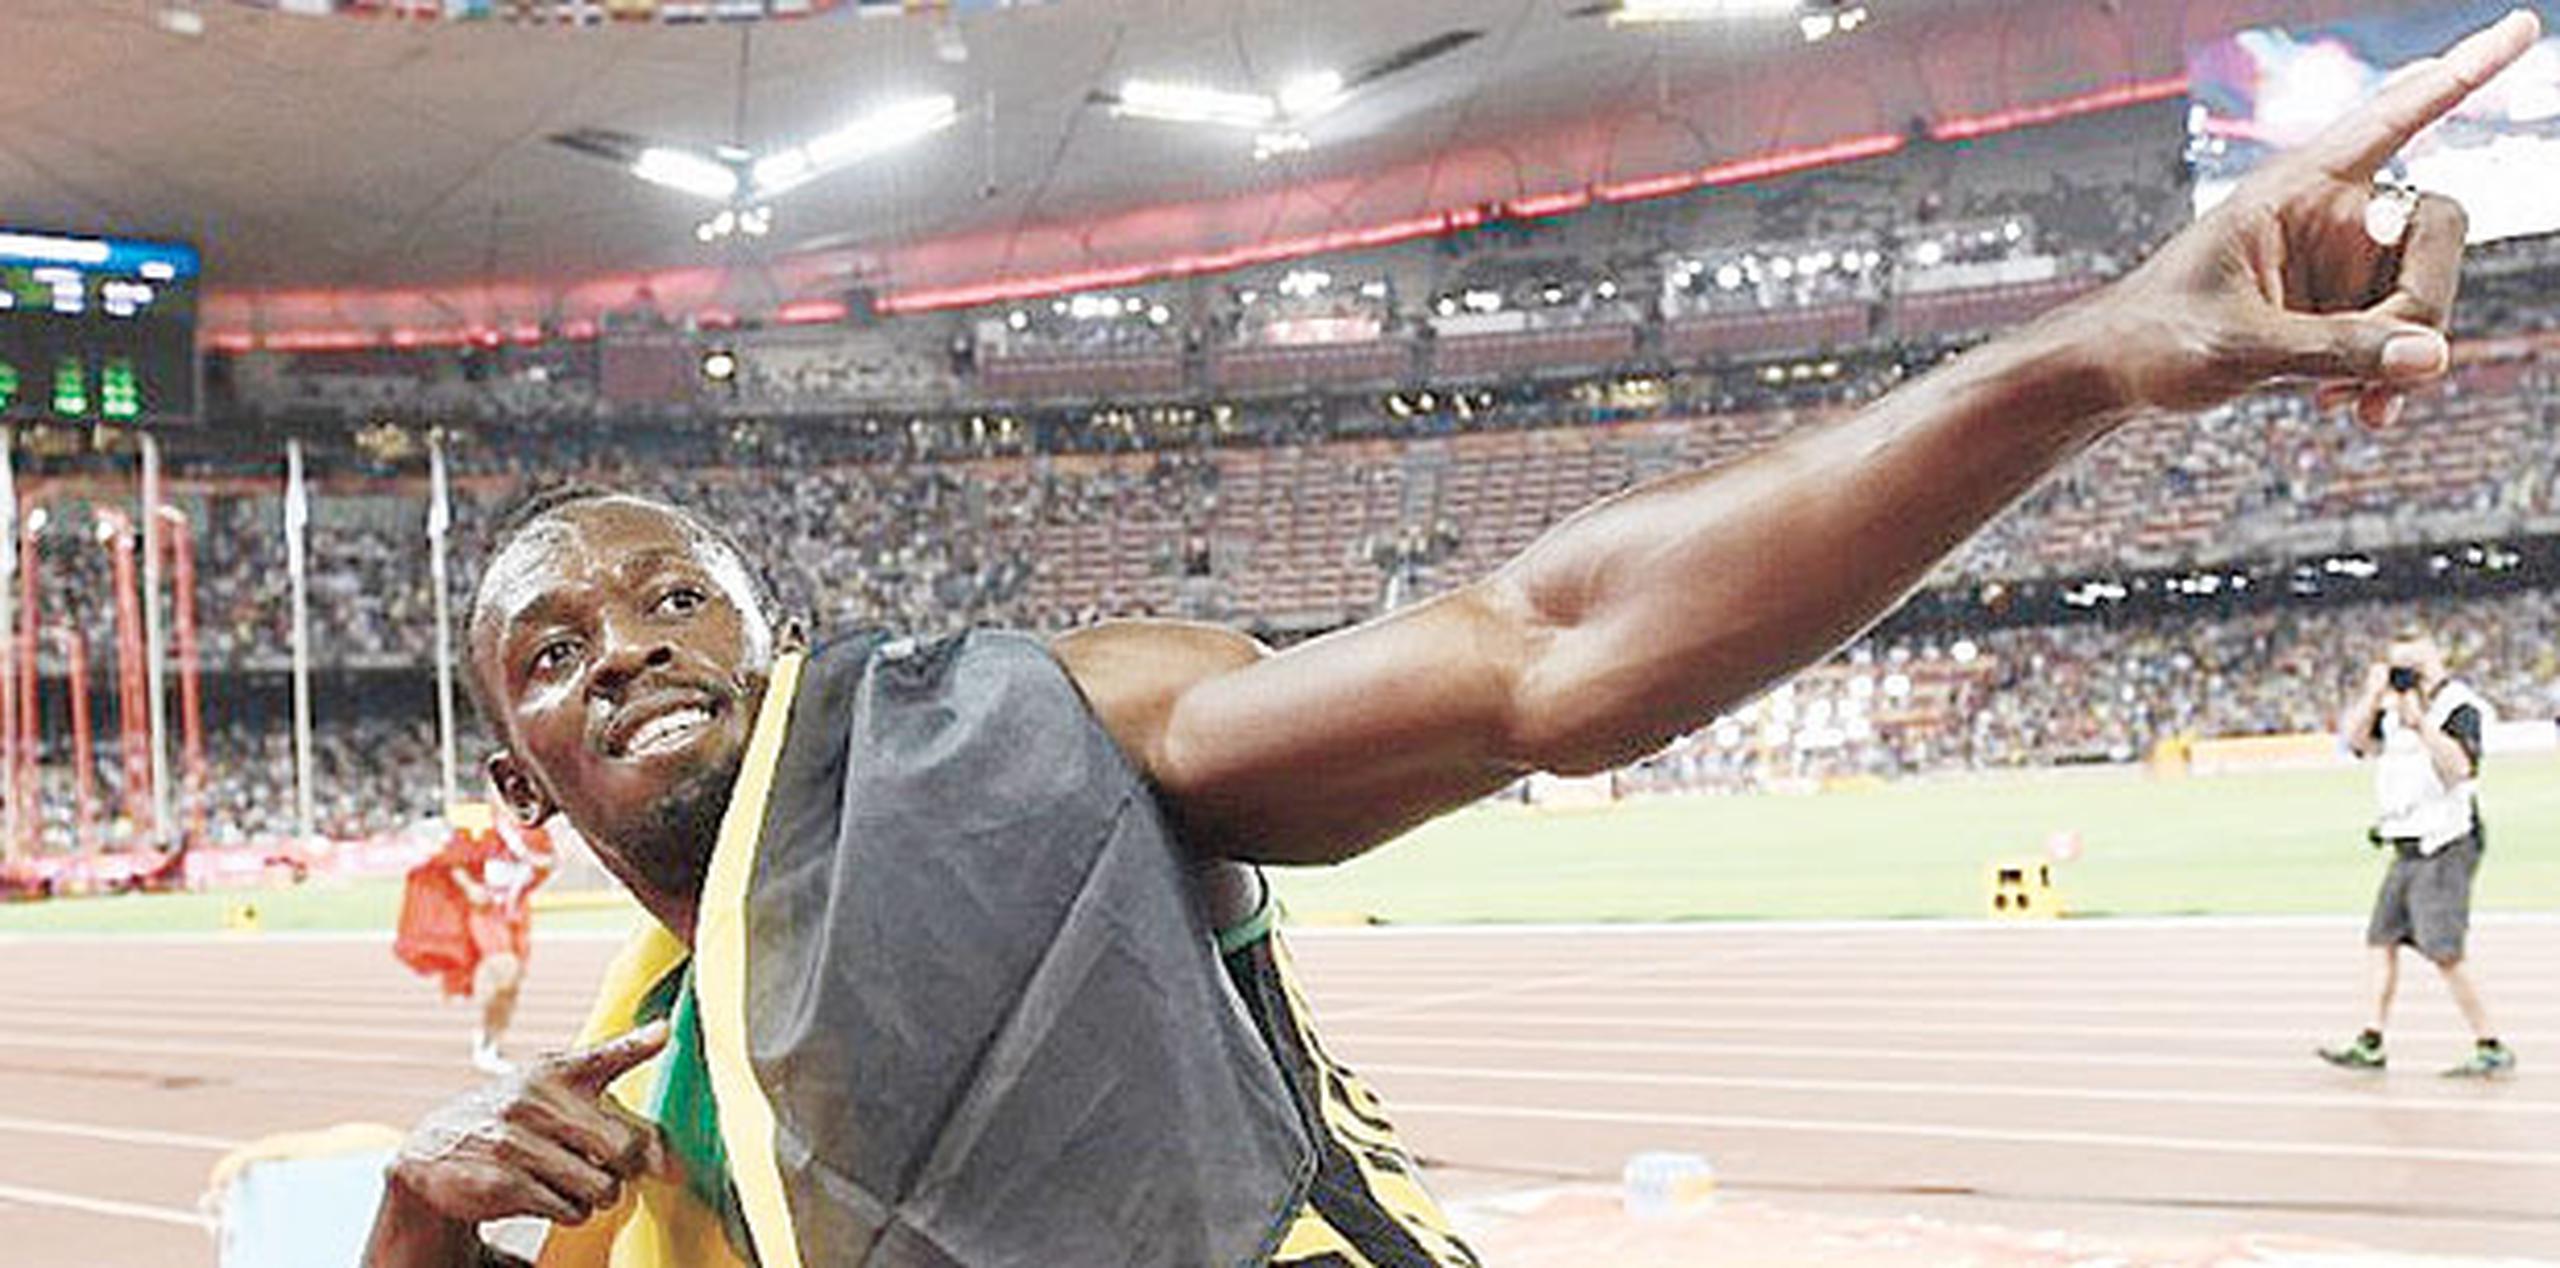 Bolt defendió con éxito en Pekín sus títulos mundiales de 100, 200 y 4x100 metros. (Archivo)